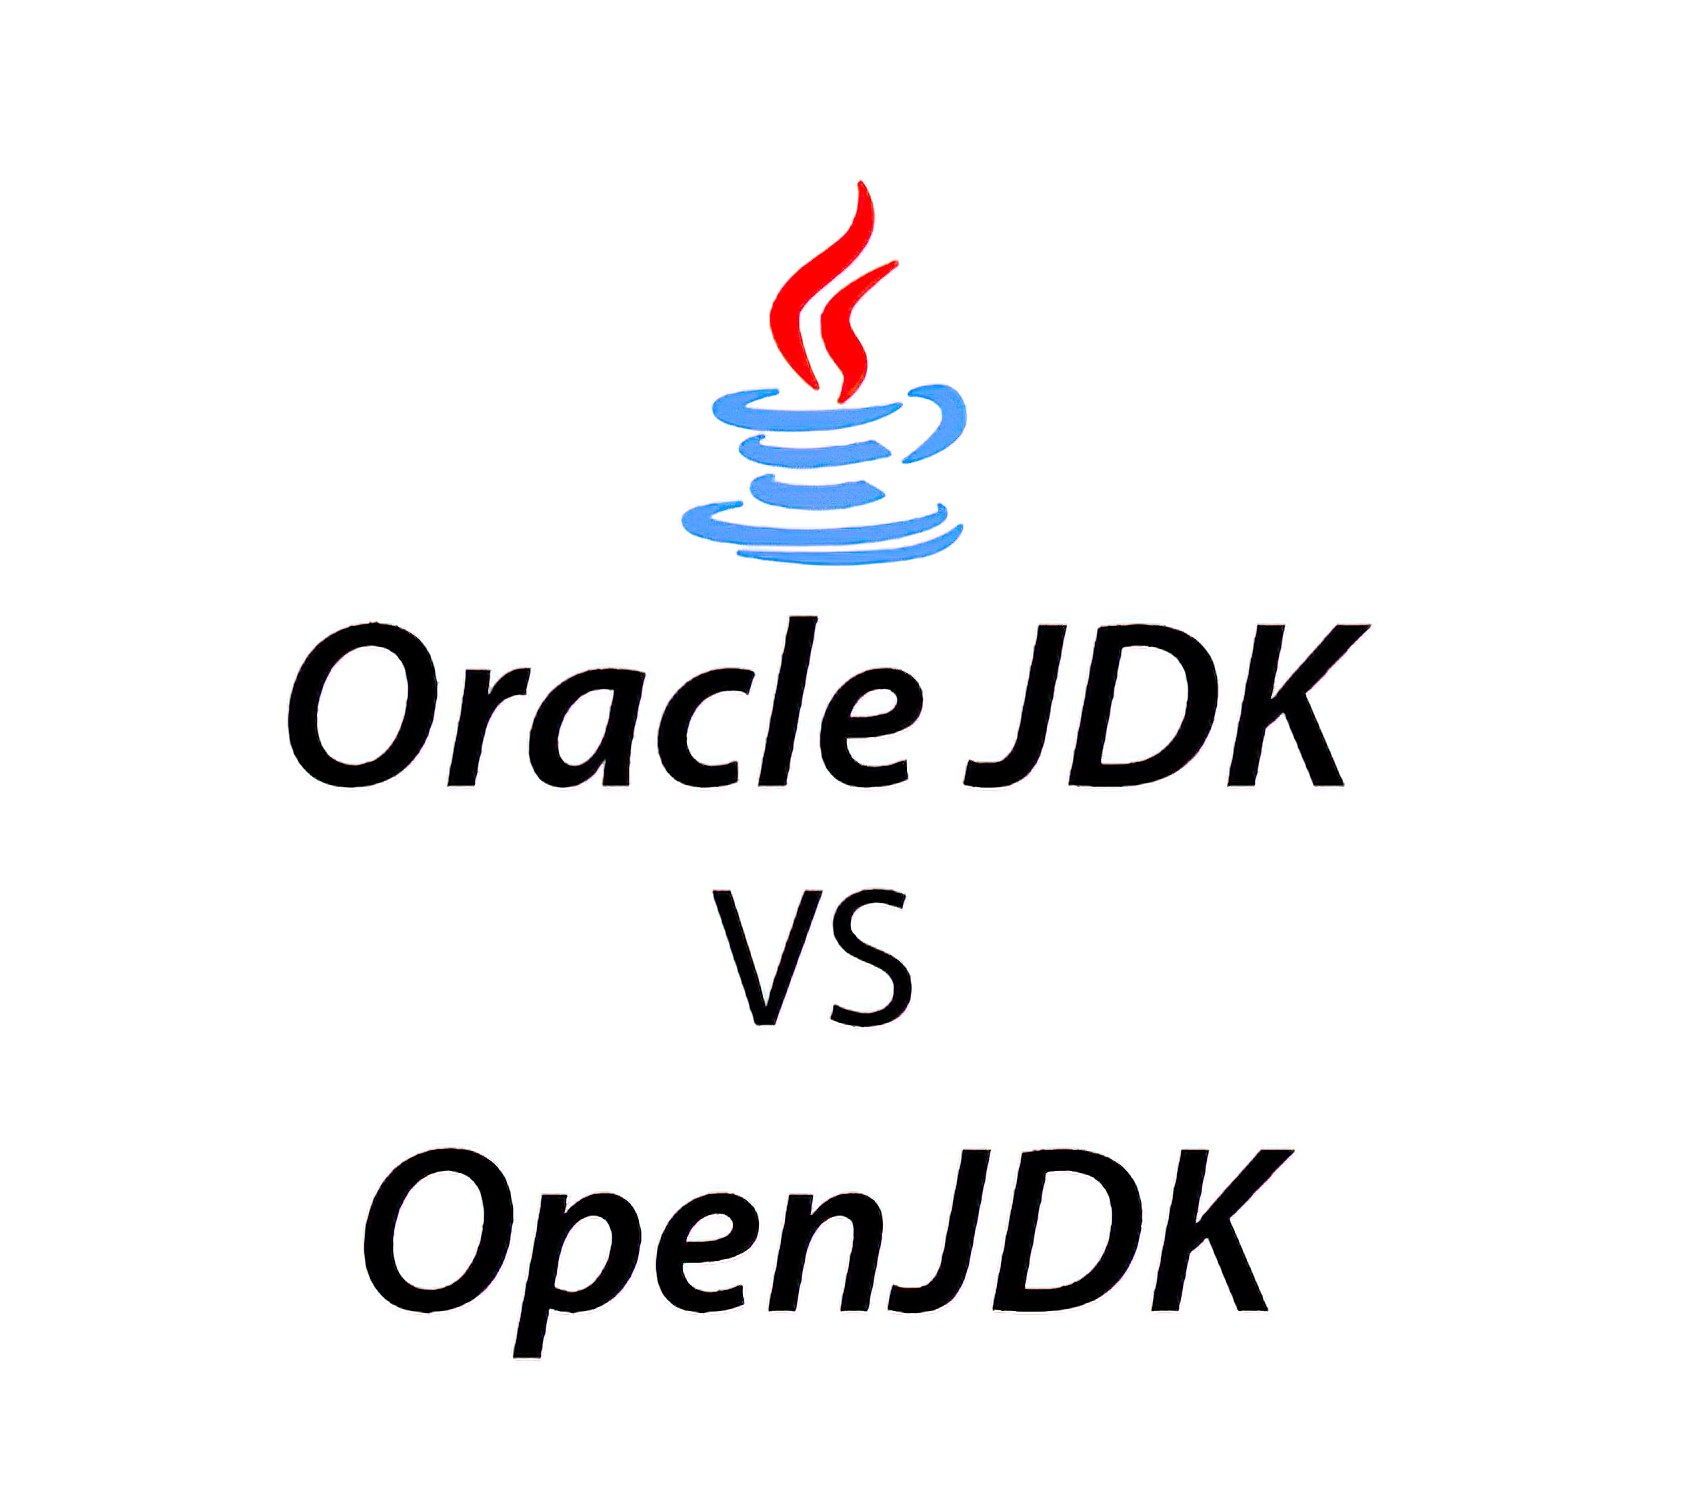 openjdk 1.8 vs oracle jdk 1.8